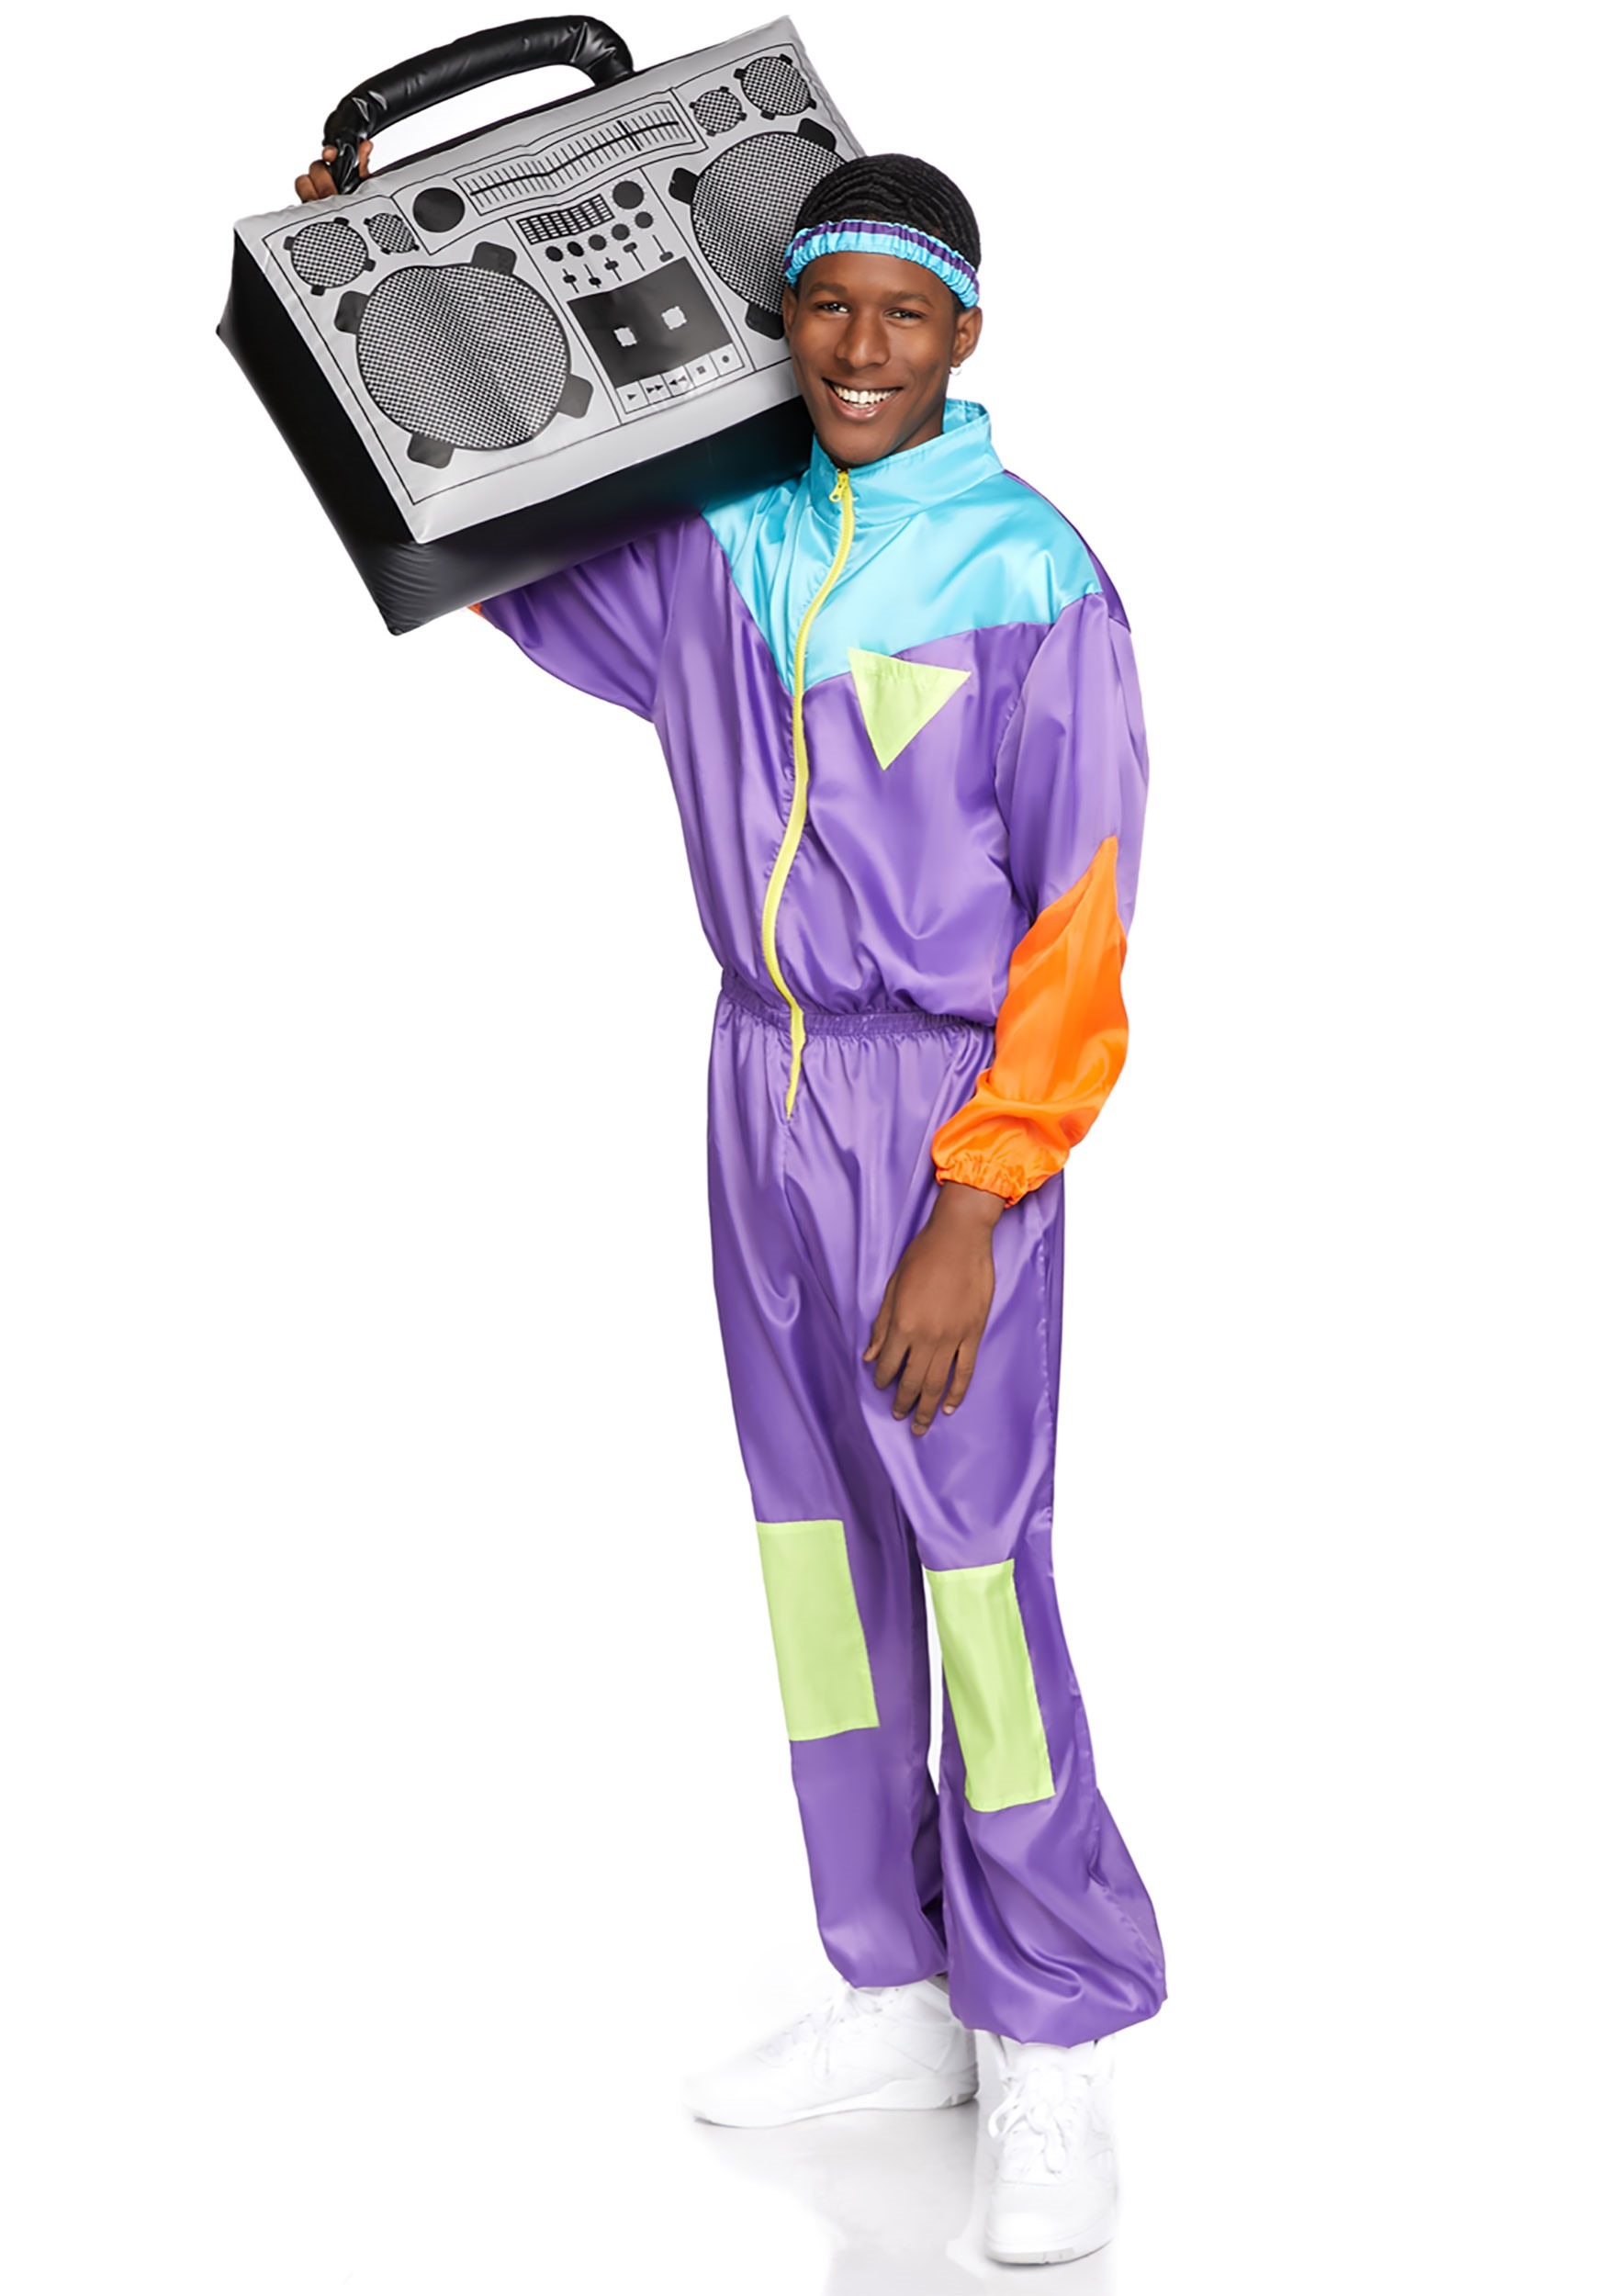 50 Men’s Vintage Halloween Costume Ideas Awesome 80s Track Suit Costume for Men $49.99 AT vintagedancer.com